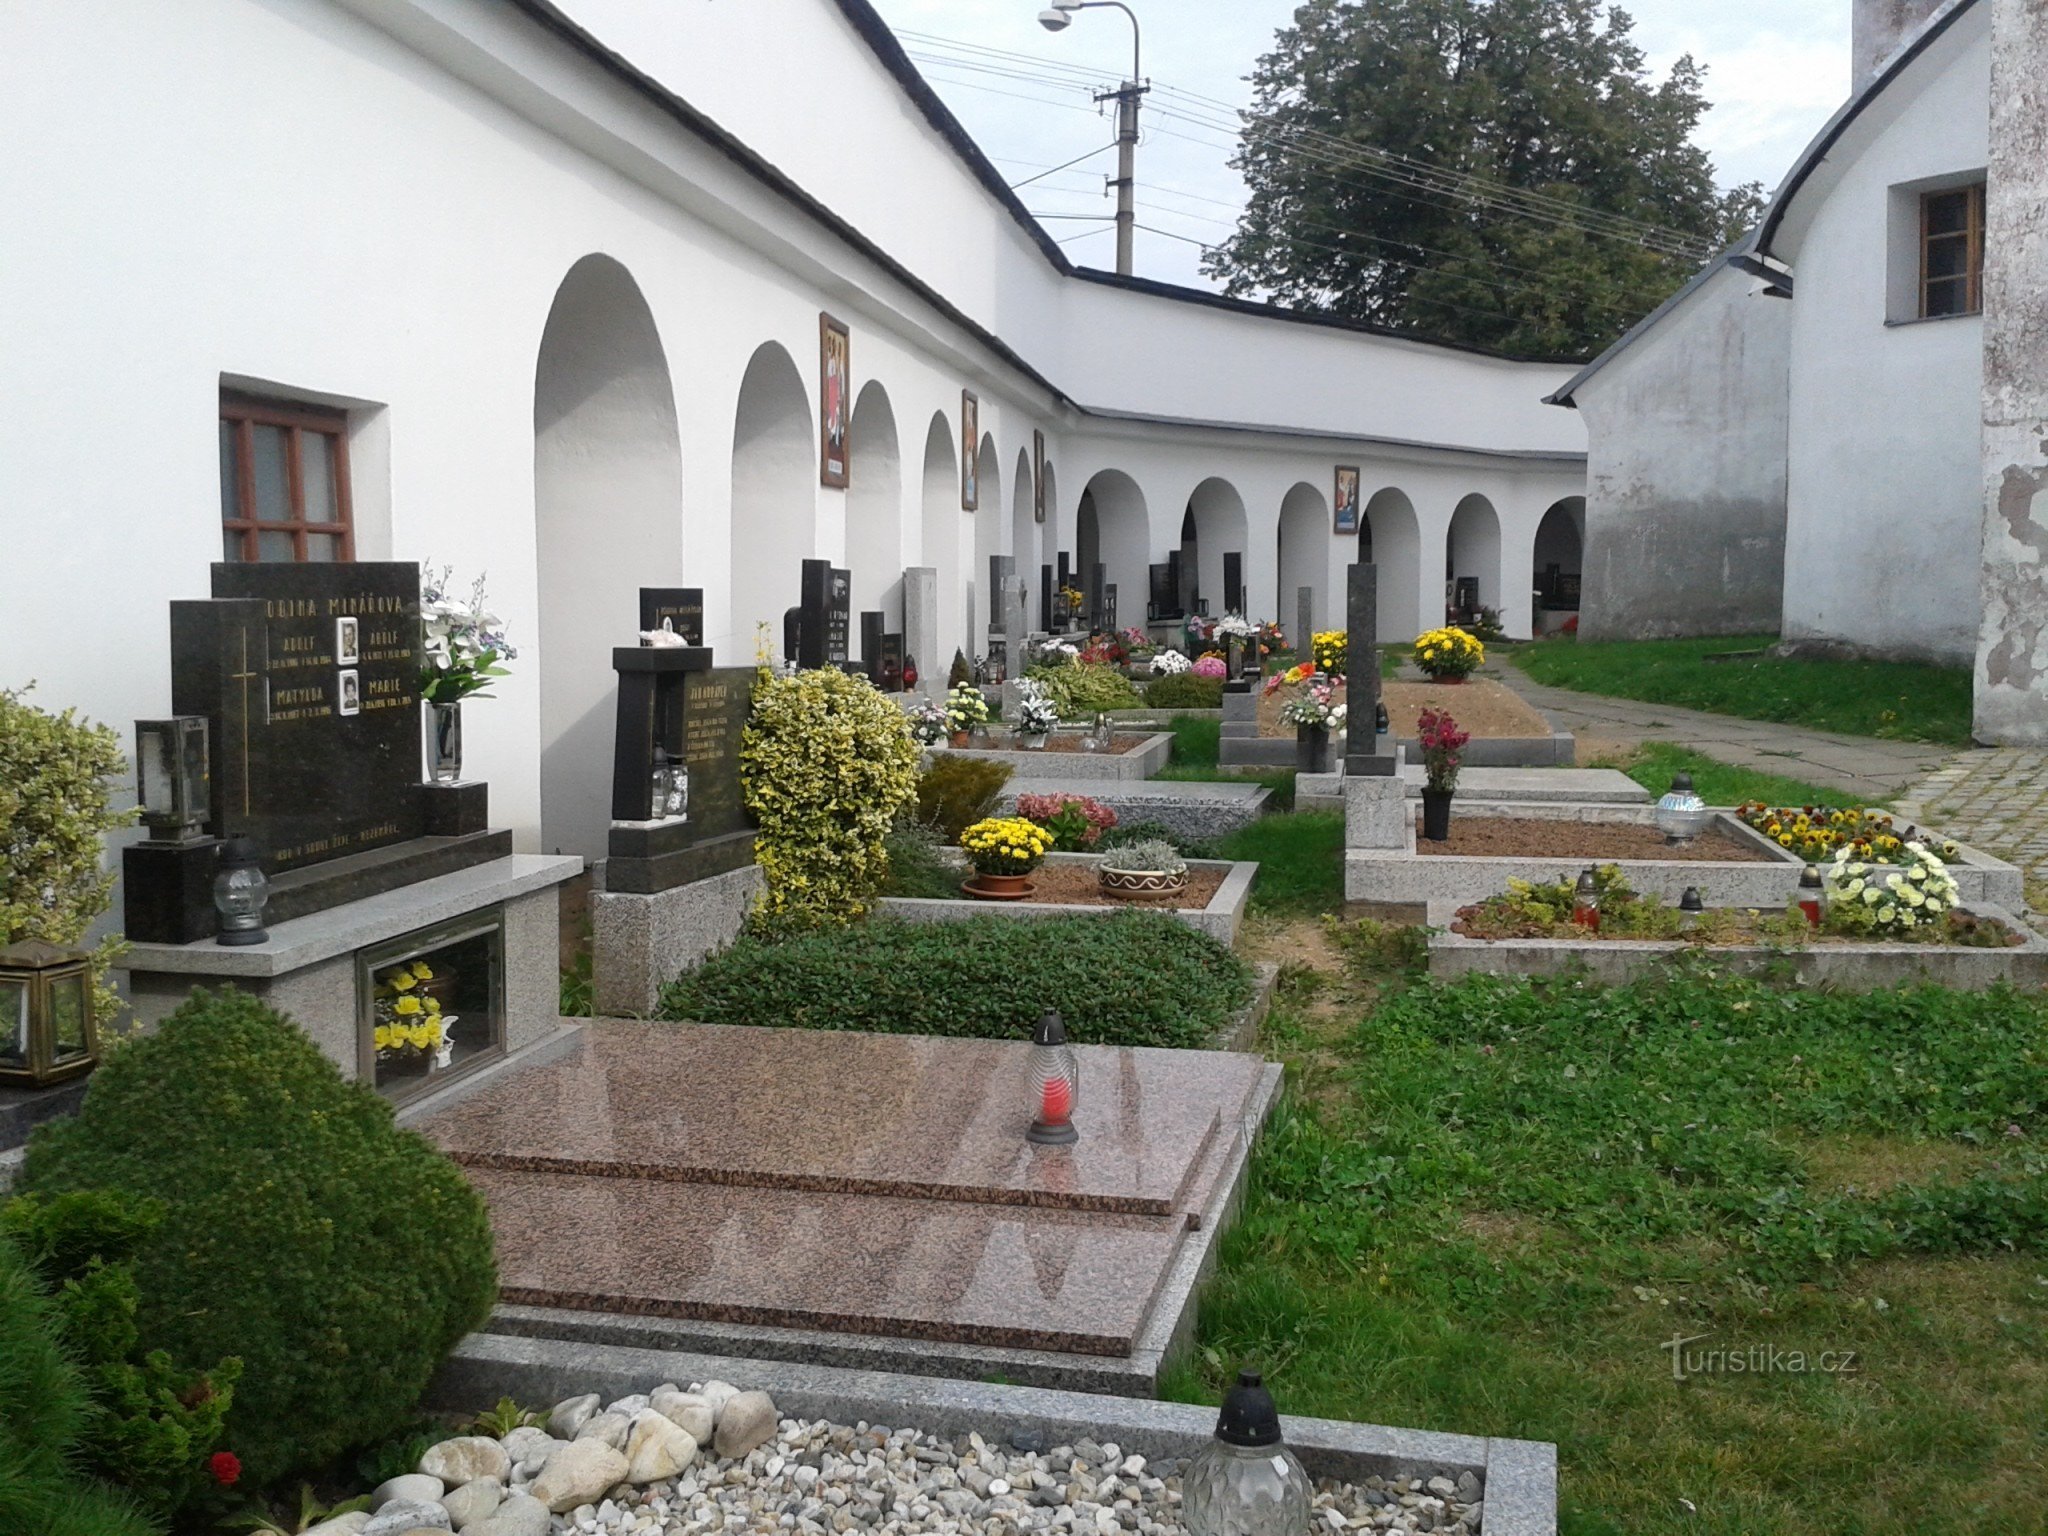 cemitério em Horní Studýnky perto da igreja